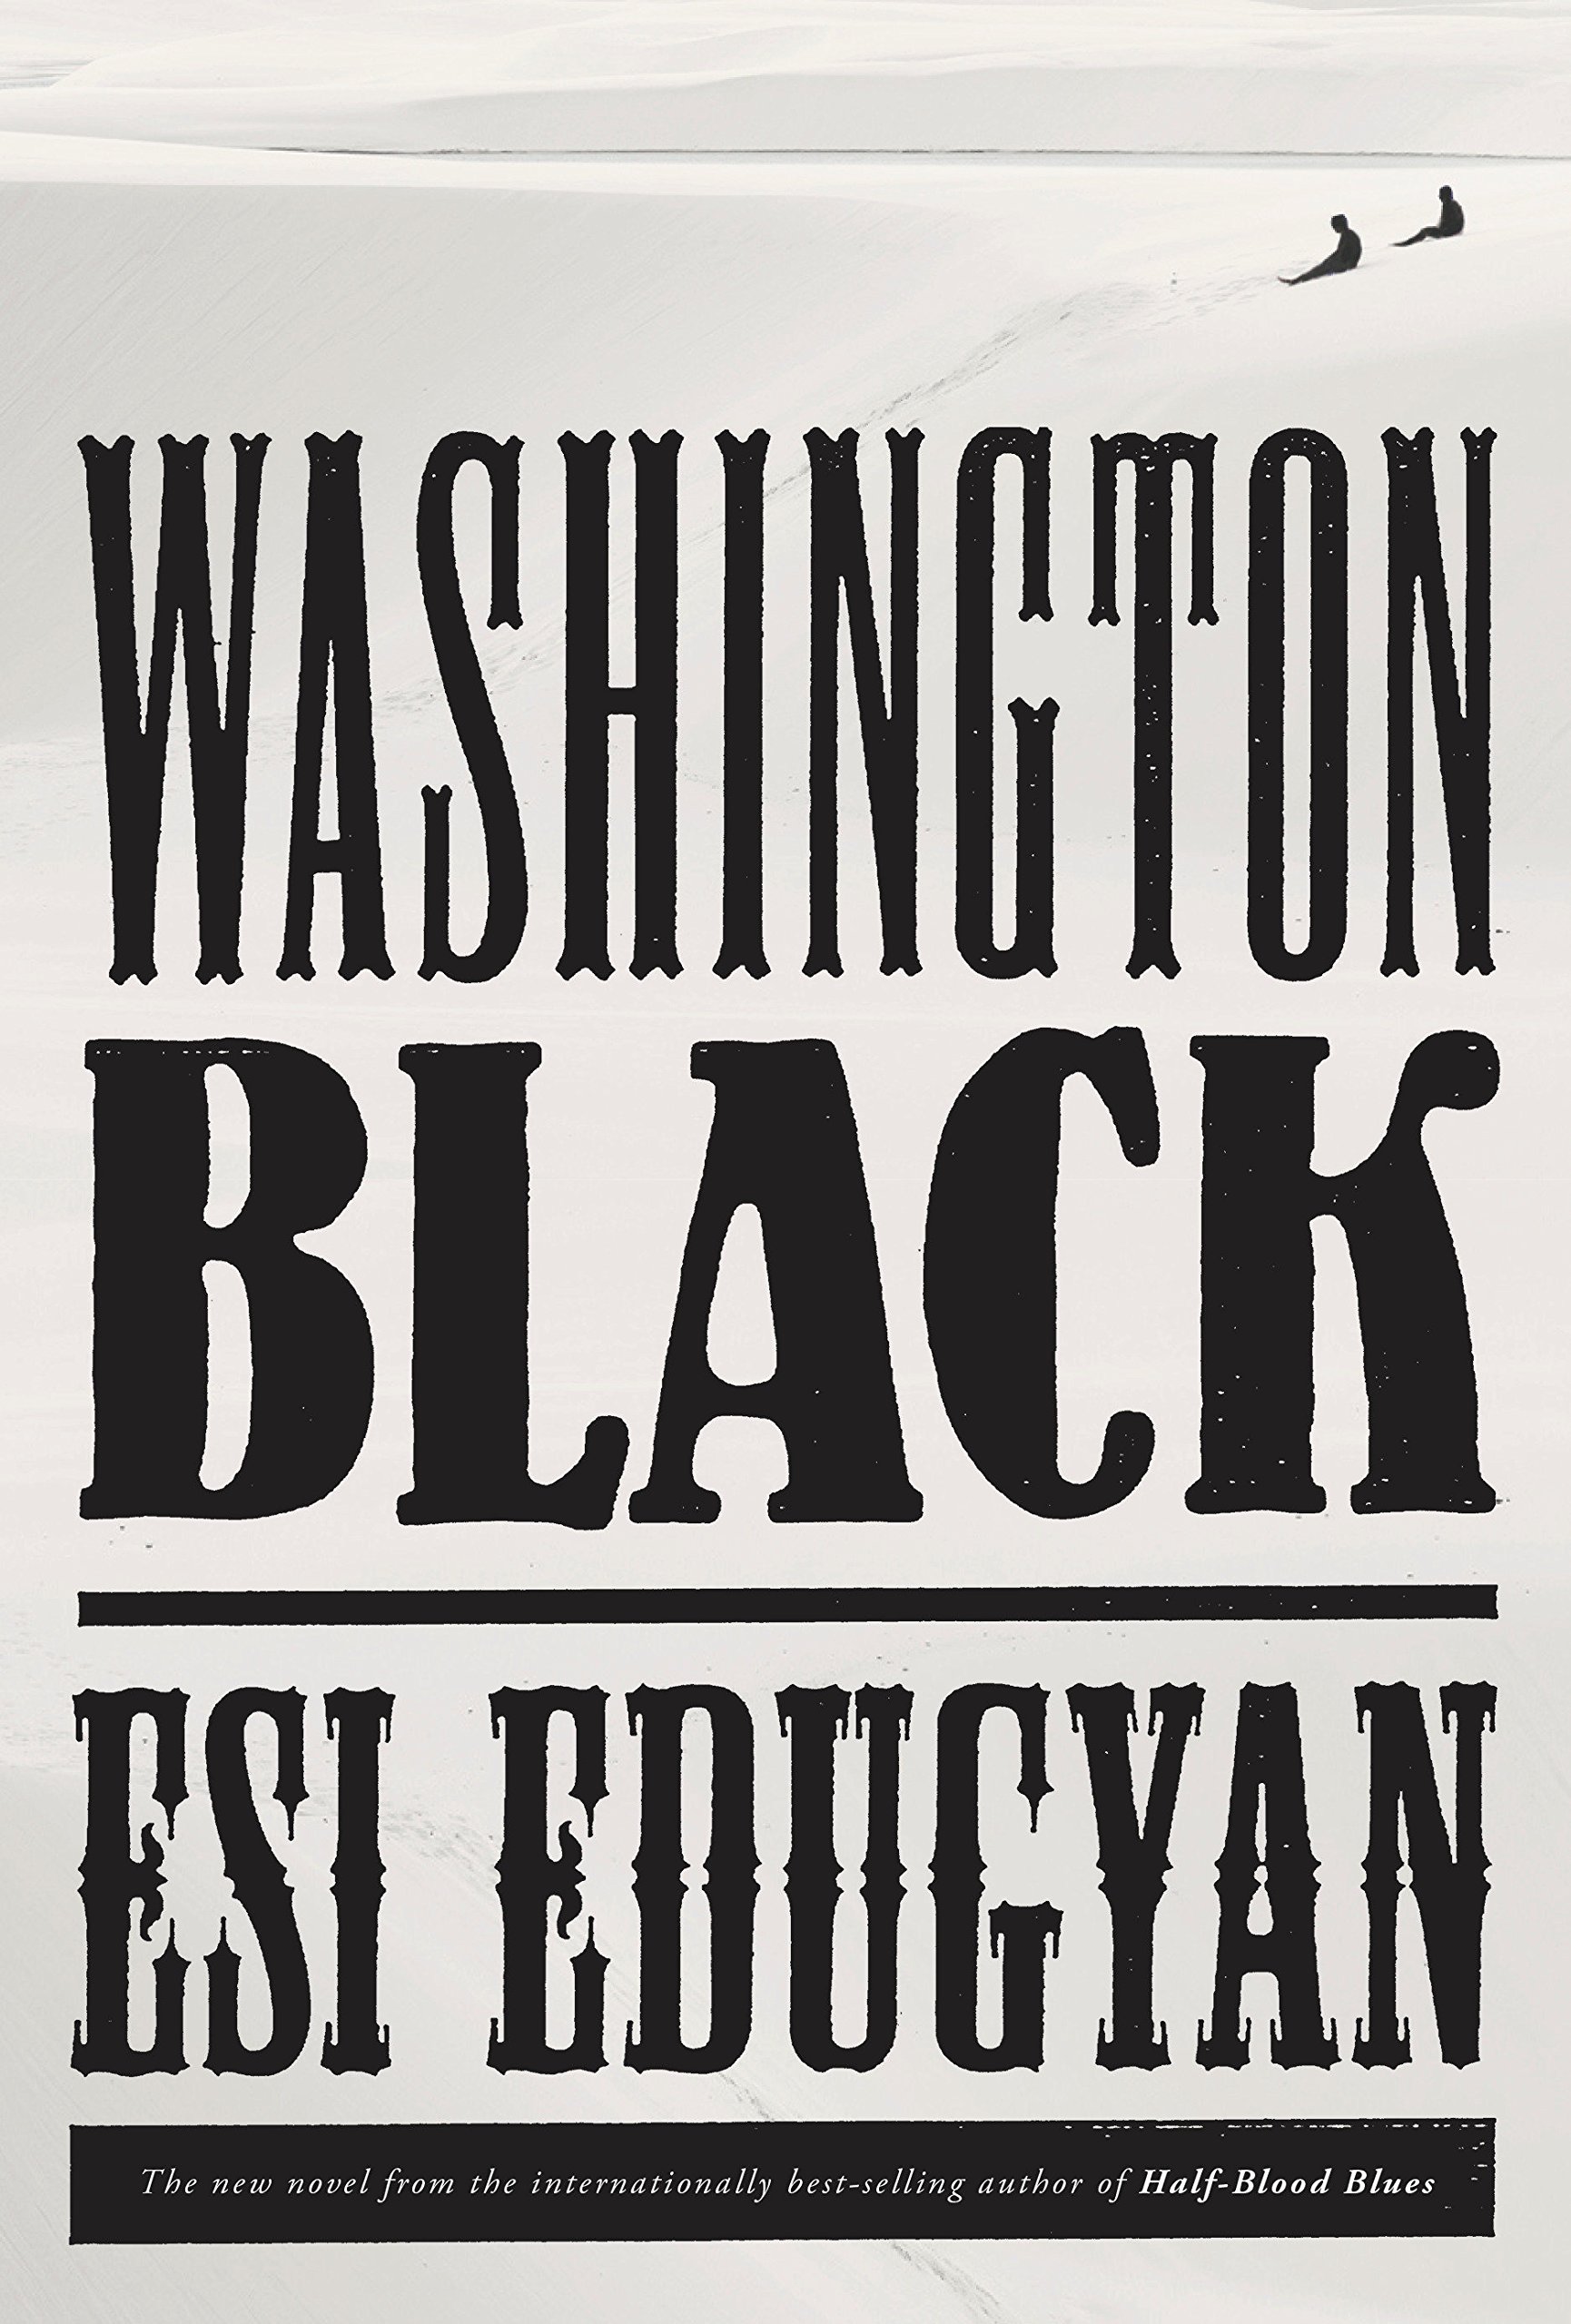 A book cover for Washington Black